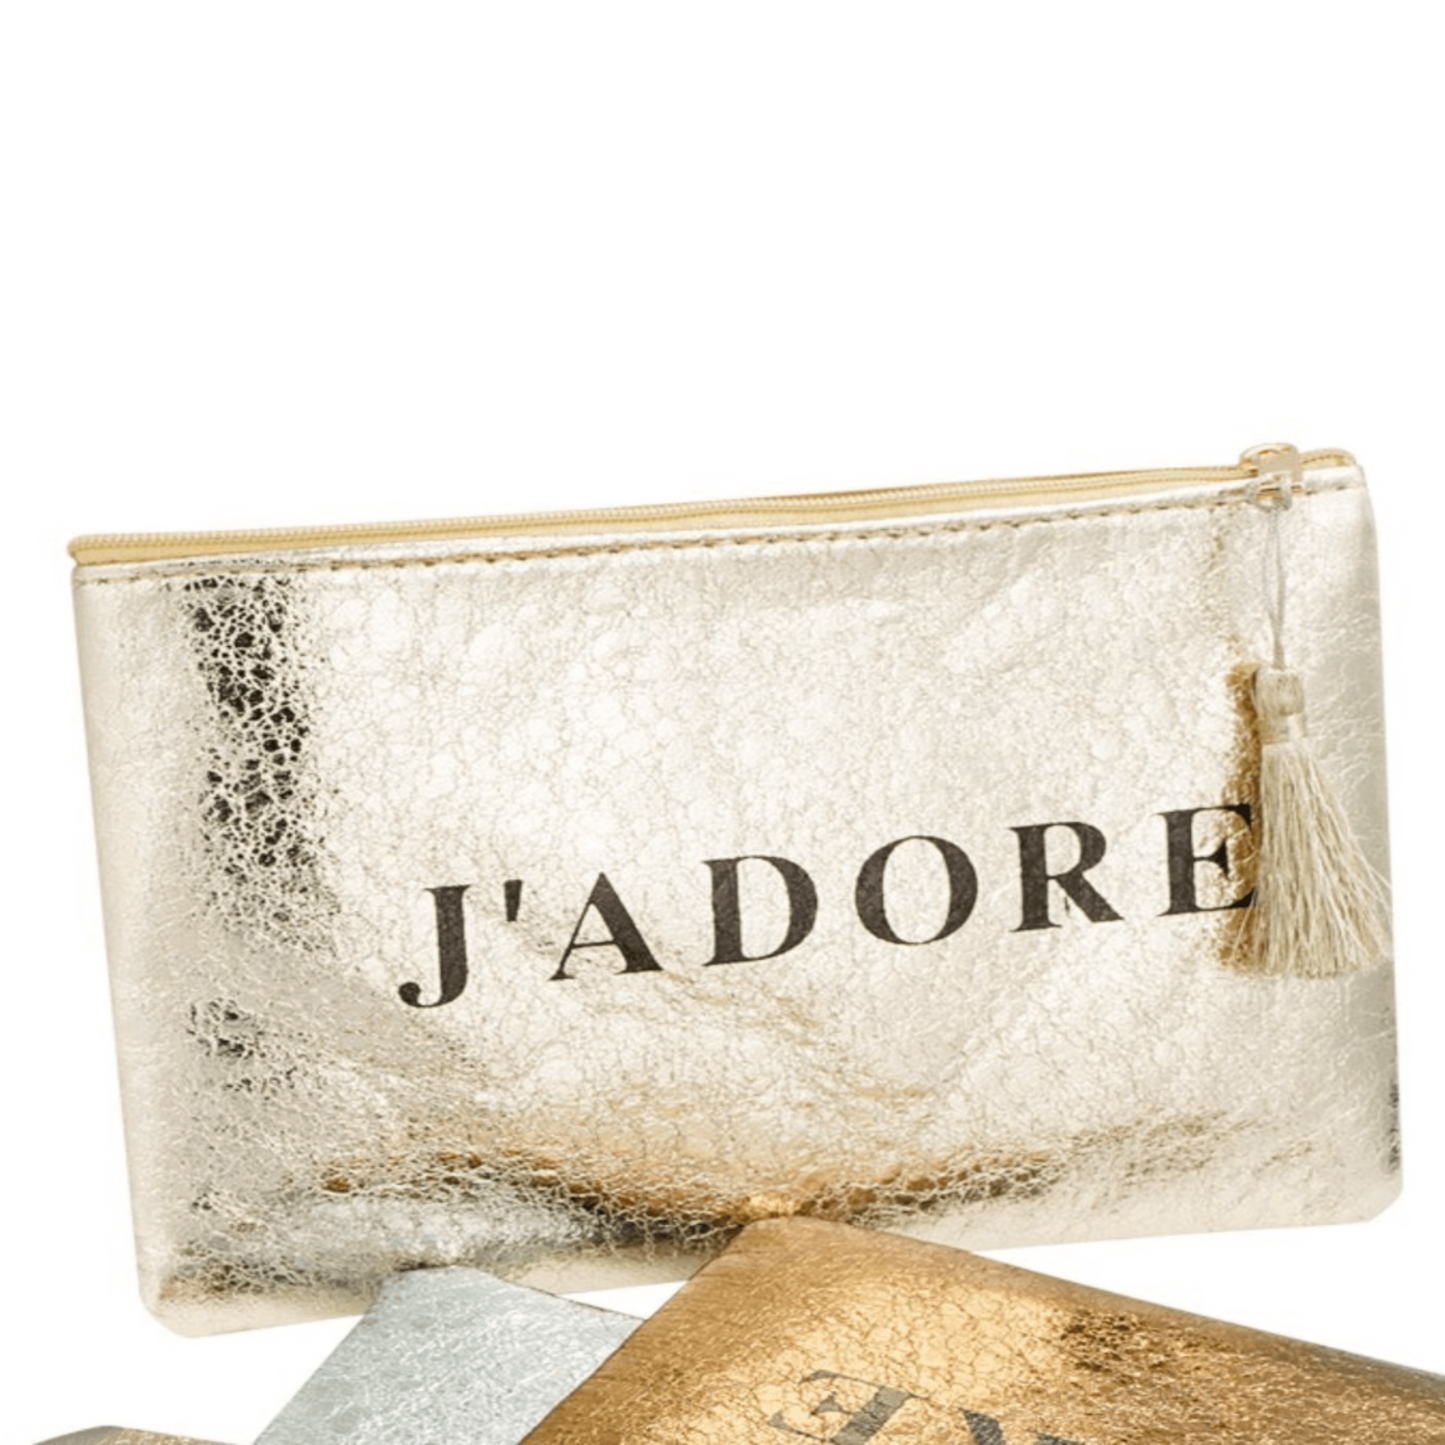 Glänzende Gold-Kosmetiktasche mit elegantem 'J'adore' Aufdruck, perfekt für Lippenstifte, Parfümflaschen und Beauty-Accessoires in der Handtasche oder als Handtäschchen.